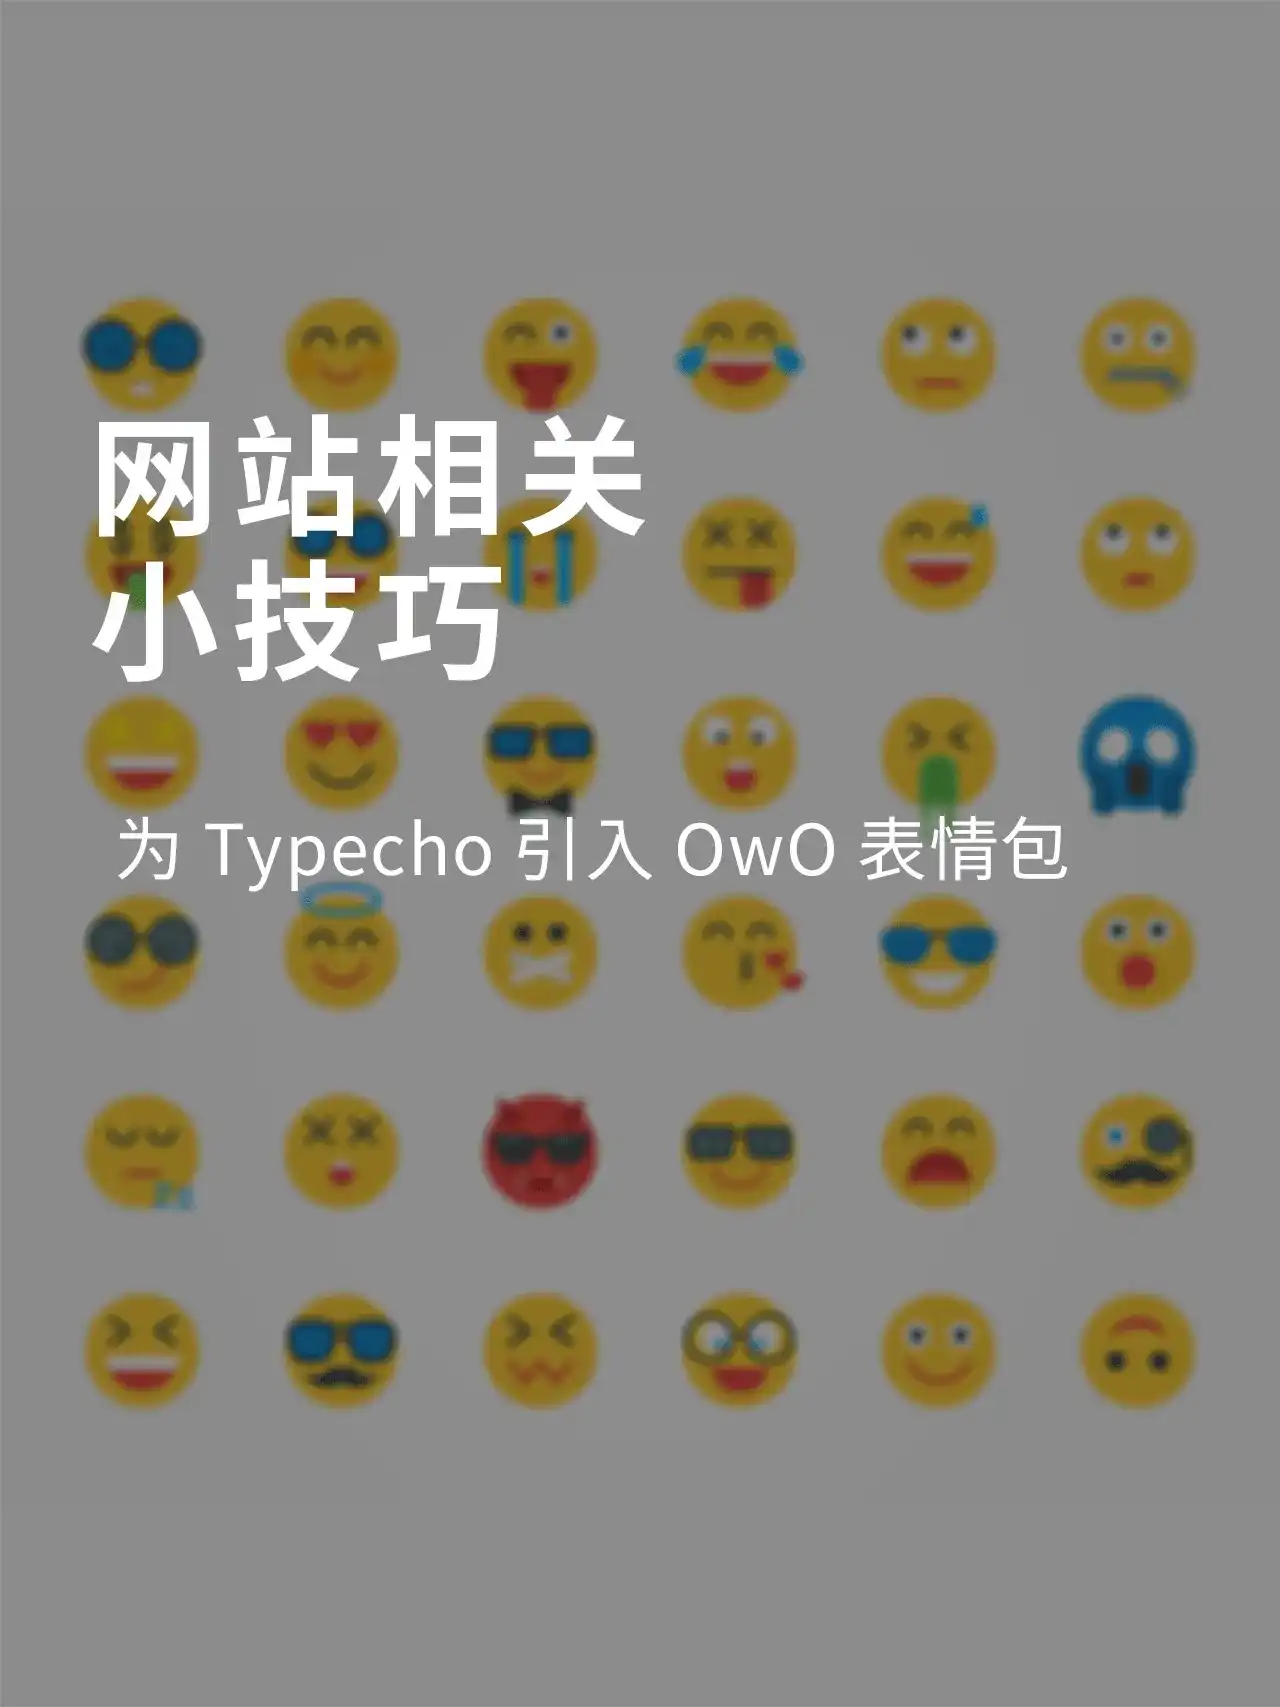 为Typecho引入OwO表情包